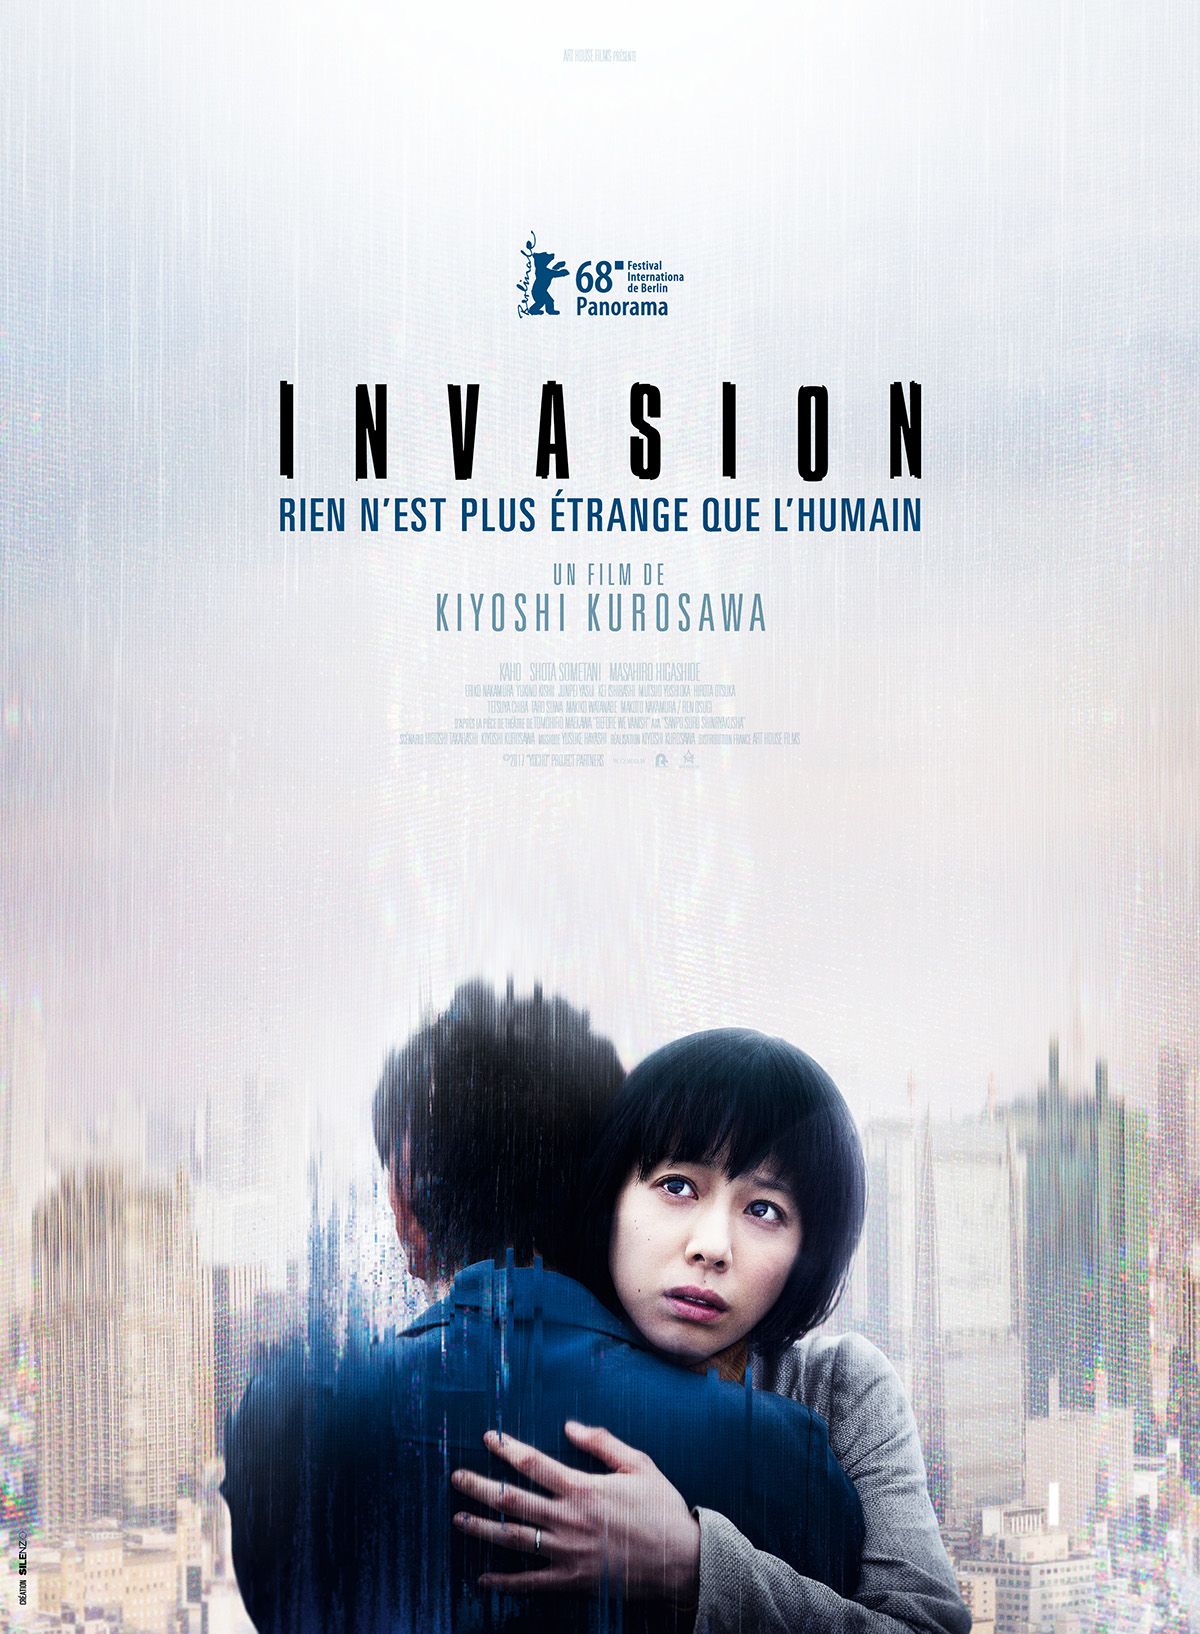 Invasion Film 2017 Senscritique 